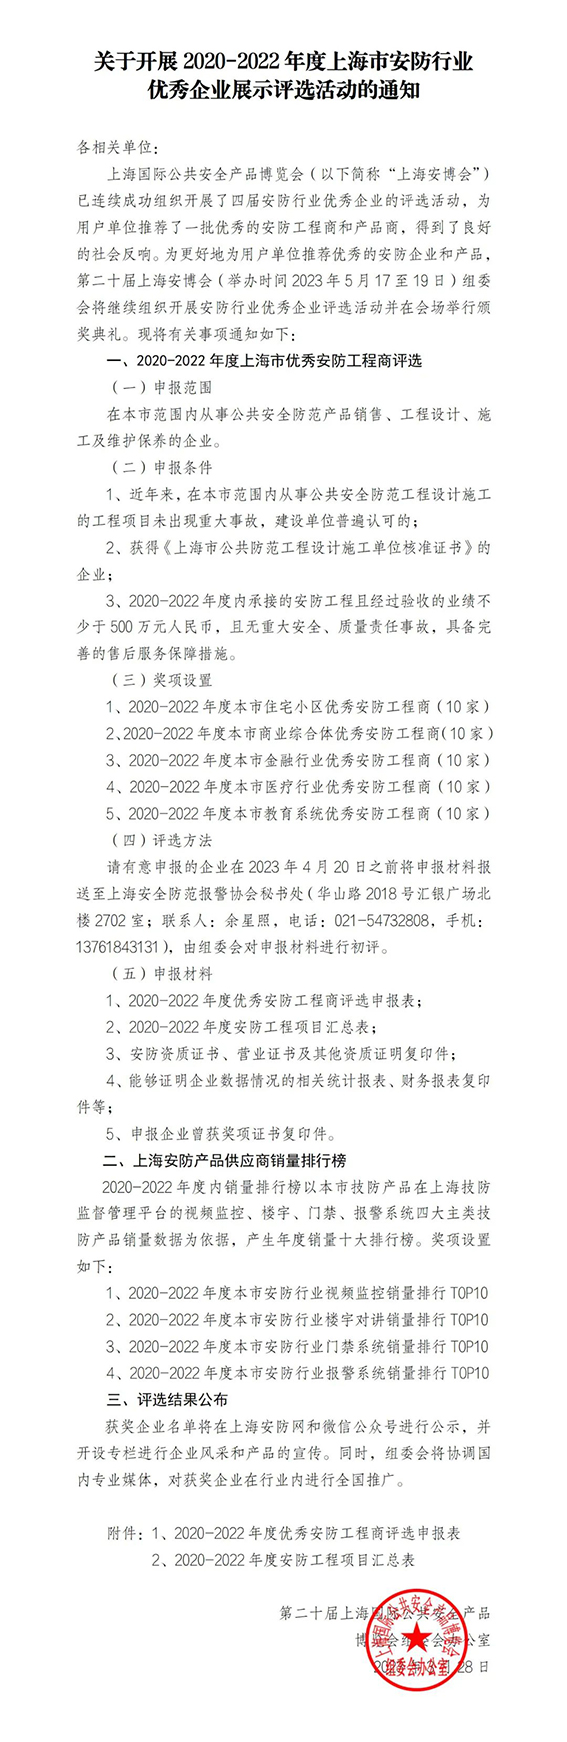 关于开展2020-2022年度上海市安防行业优秀企业展示评选活动的通知w.jpg